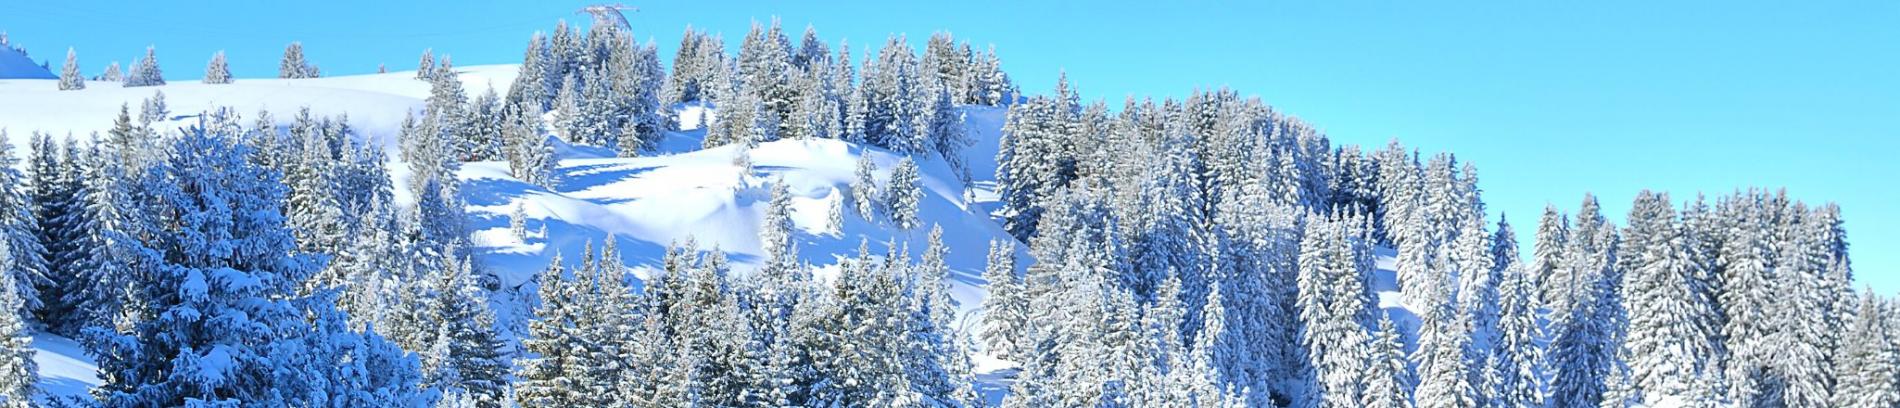 Slide Résidence Les Terrasses de Veret à Flaine - Domaine skiable